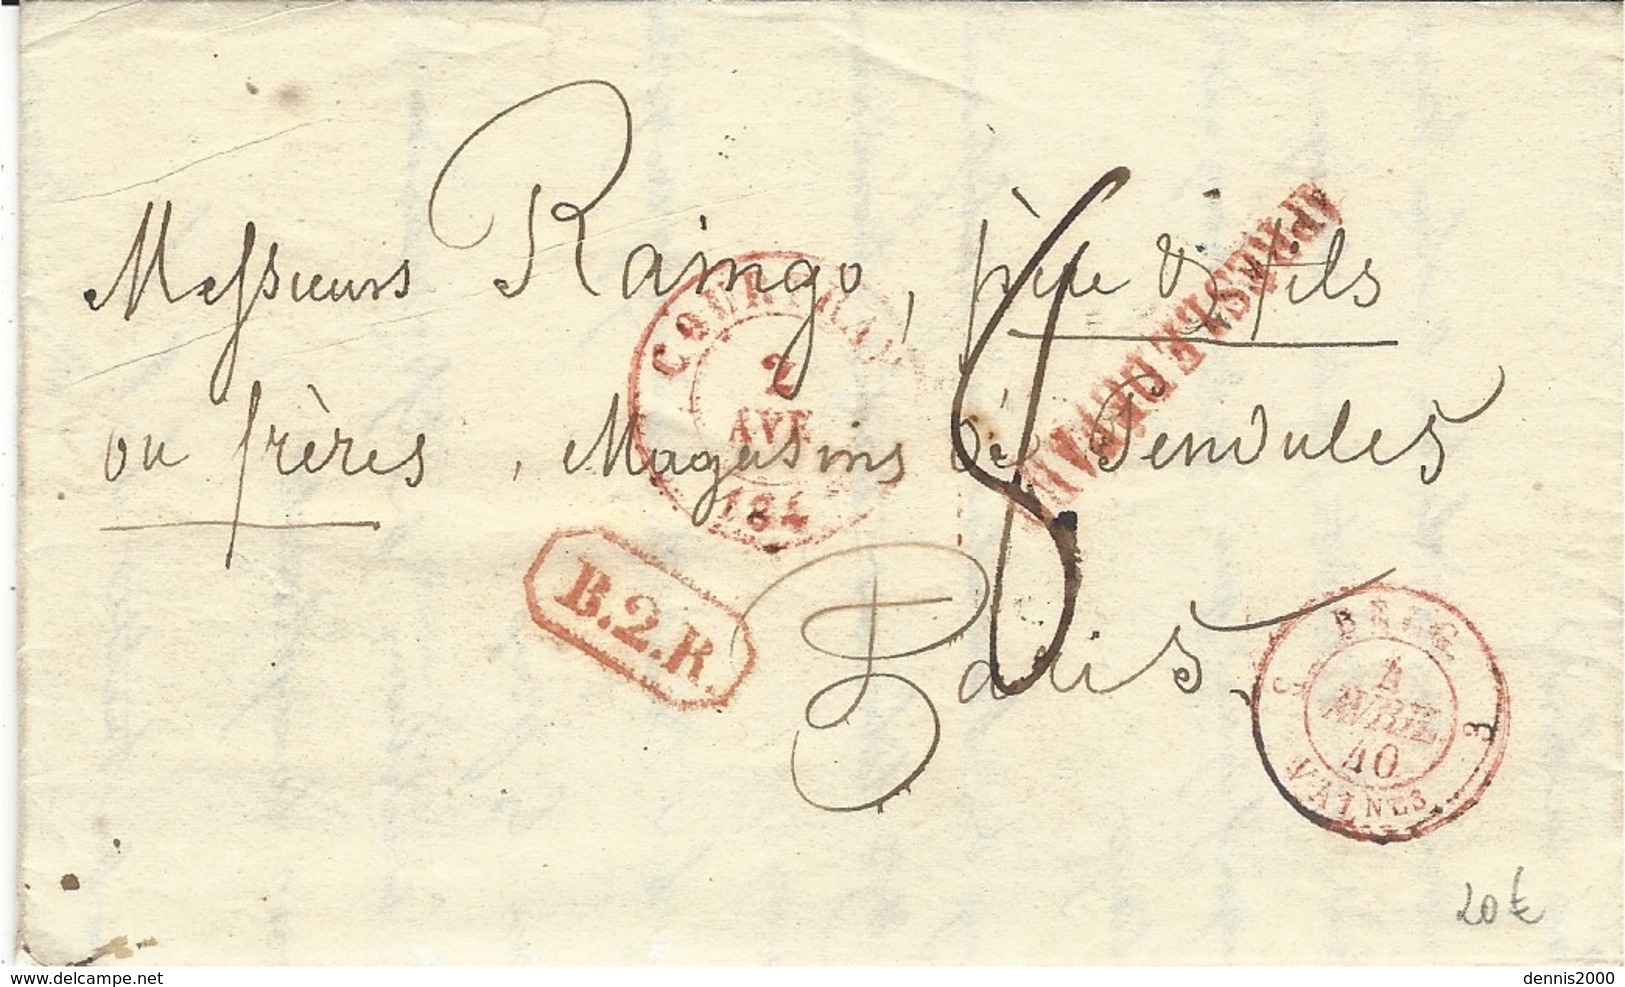 1840- Lettre De COURTRAY Pour Paris  B.2.R Encadré Rouge + APRES LE DEPART  Taxe 8 D. - 1830-1849 (Belgique Indépendante)